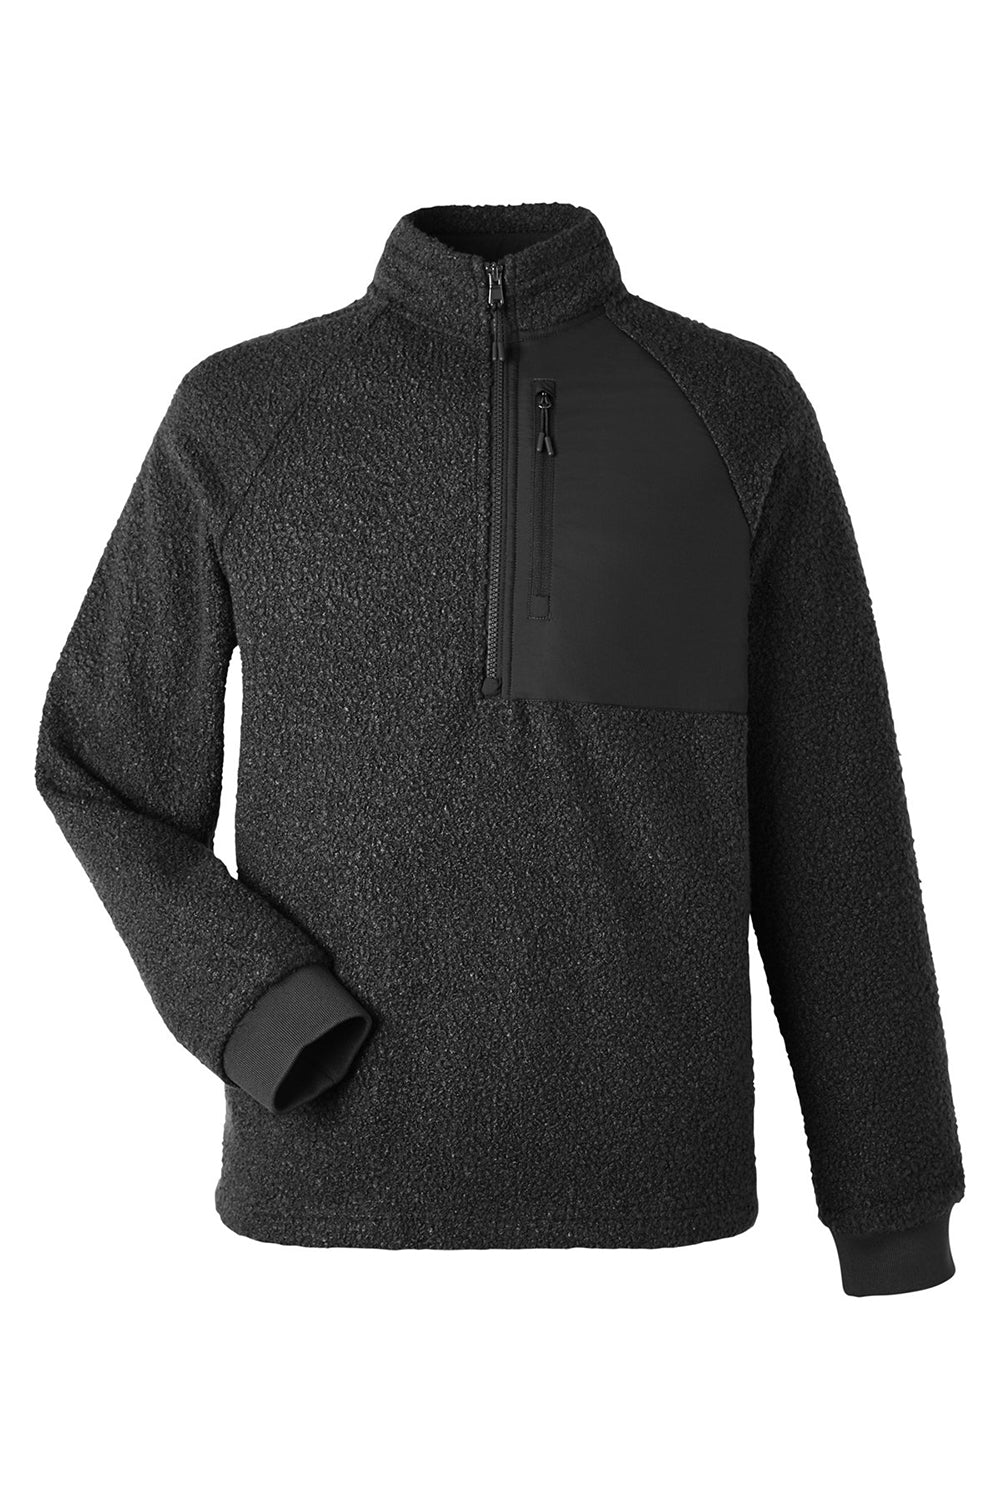 North End NE713 Mens Aura Sweater Fleece 1/4 Zip Sweatshirt Black Flat Front